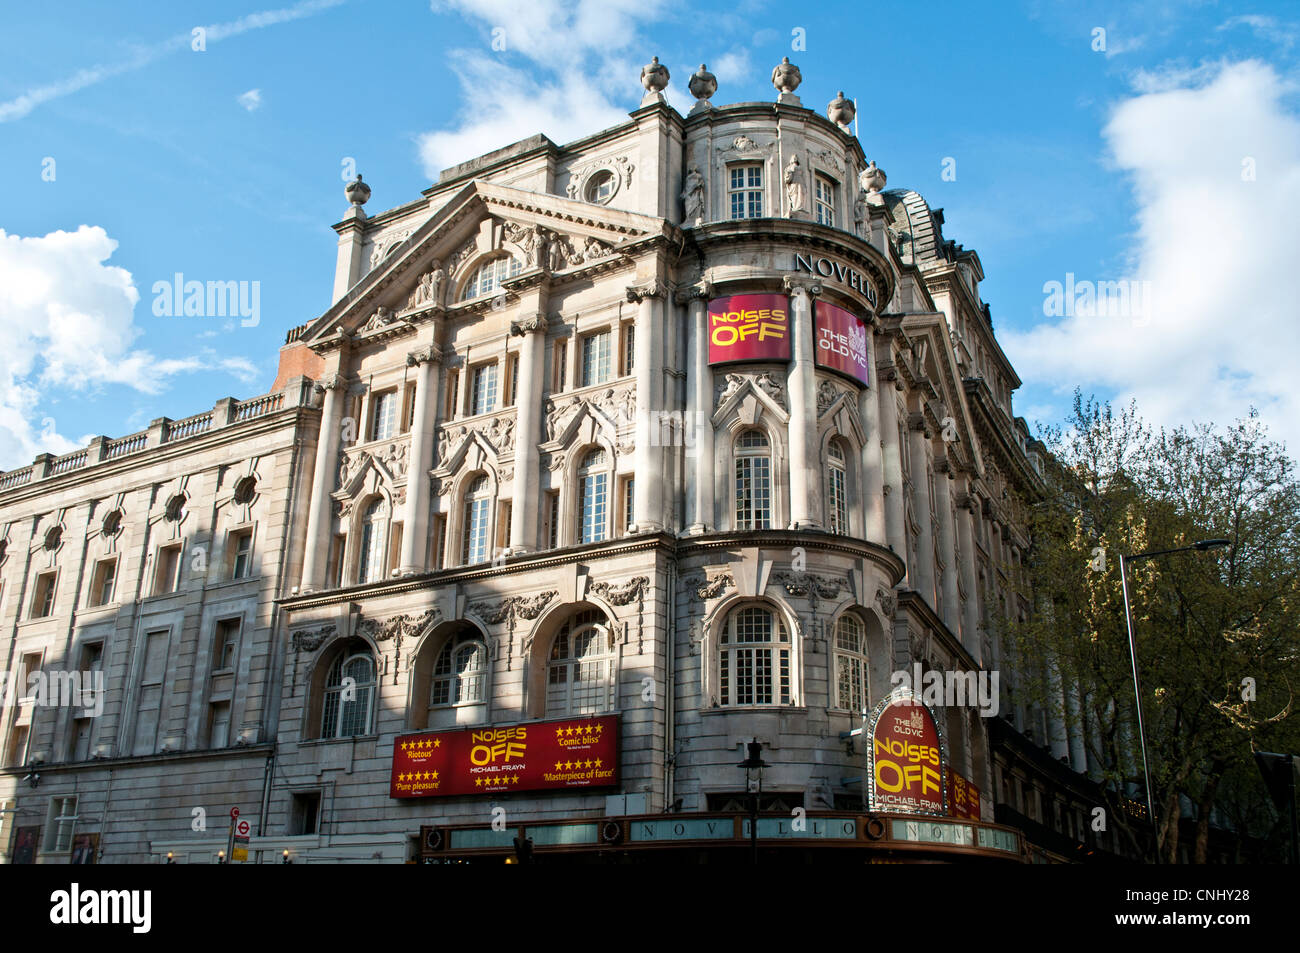 Novello Theatre de bruits Off play, West End, Londres, UK Banque D'Images